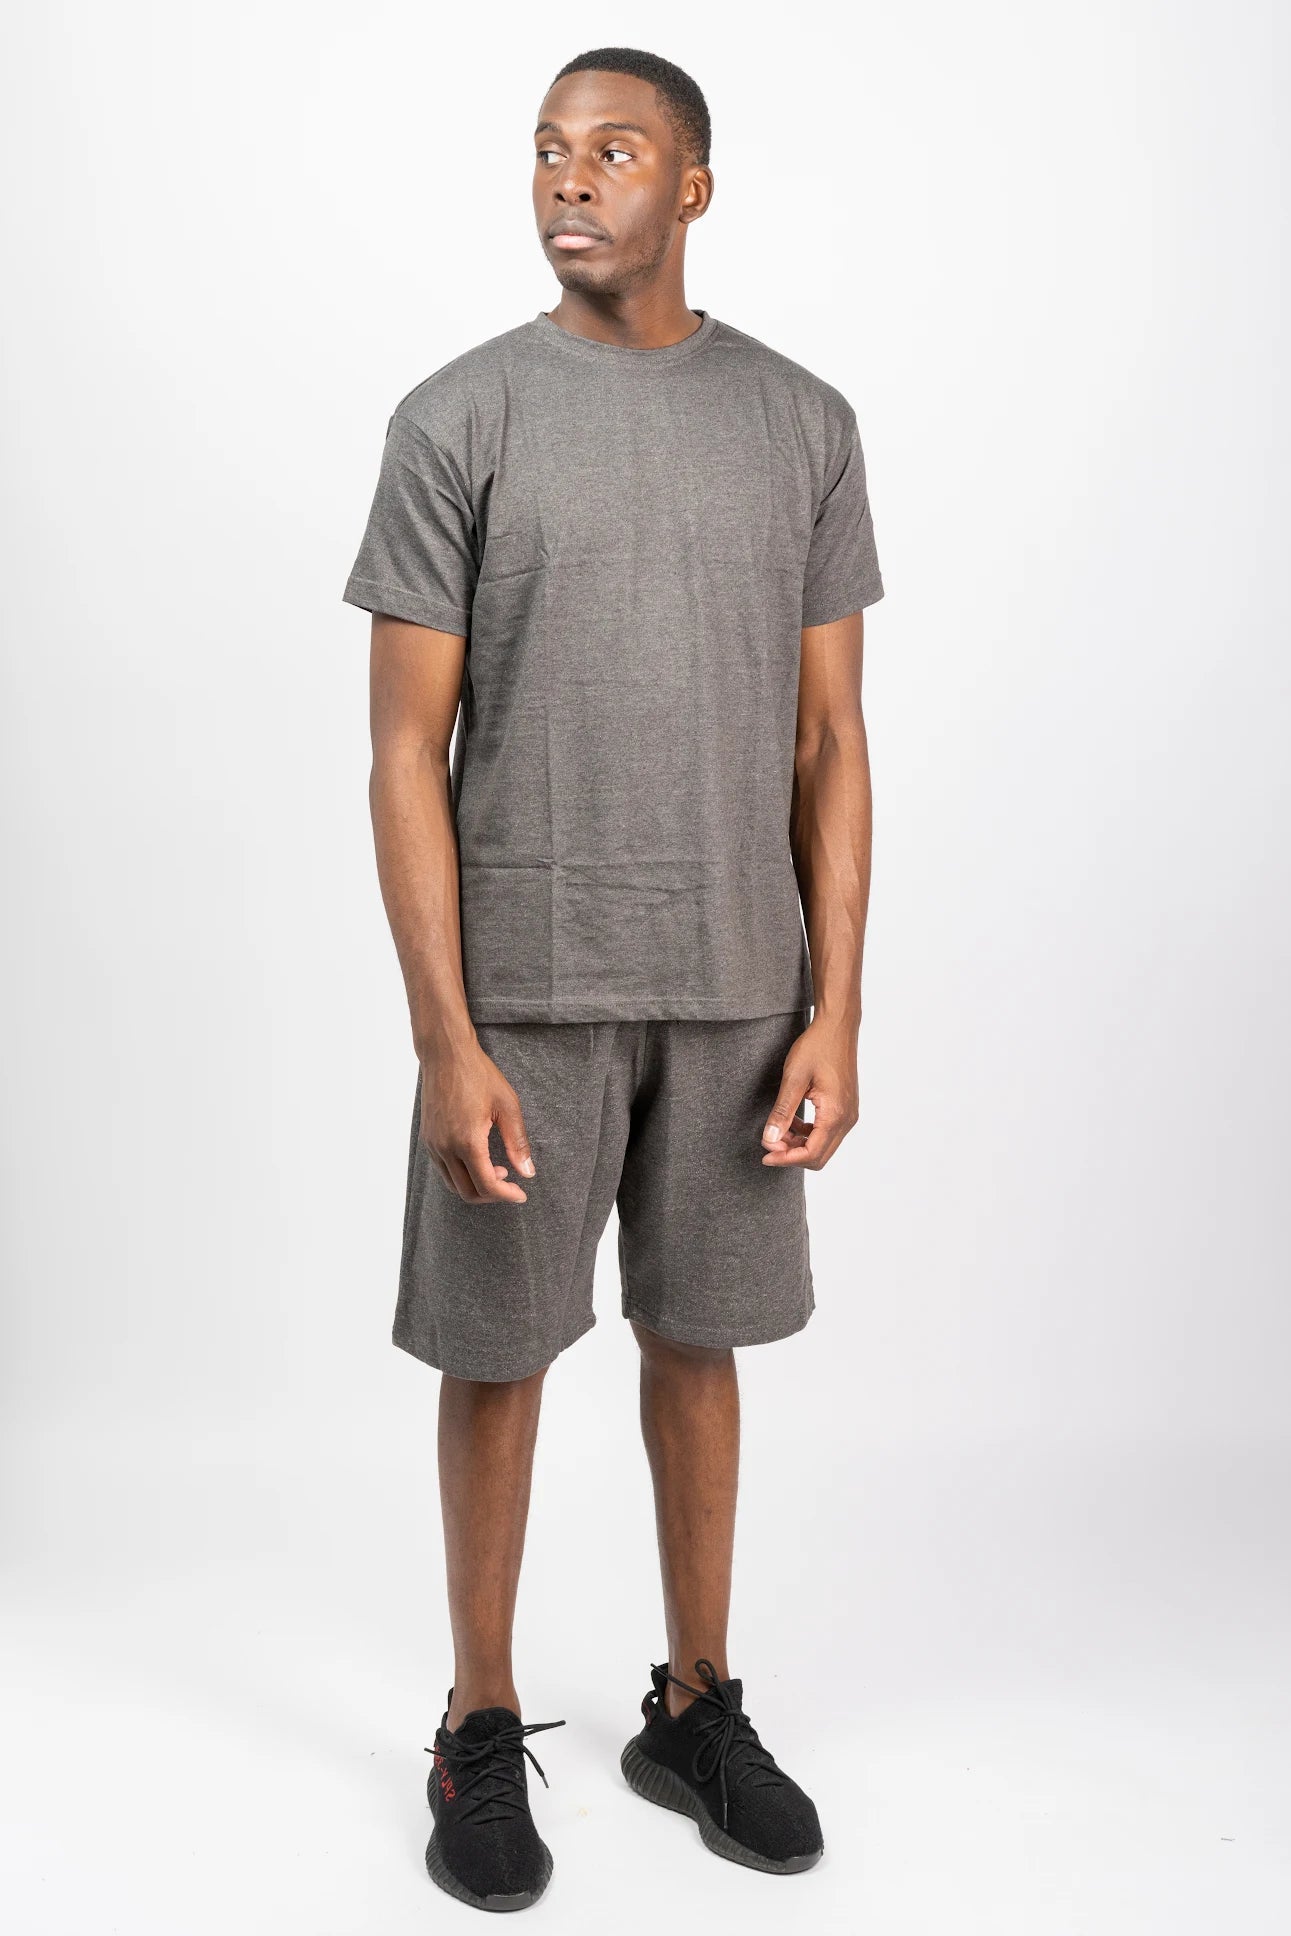 Dark Grey t-shirt and short sets